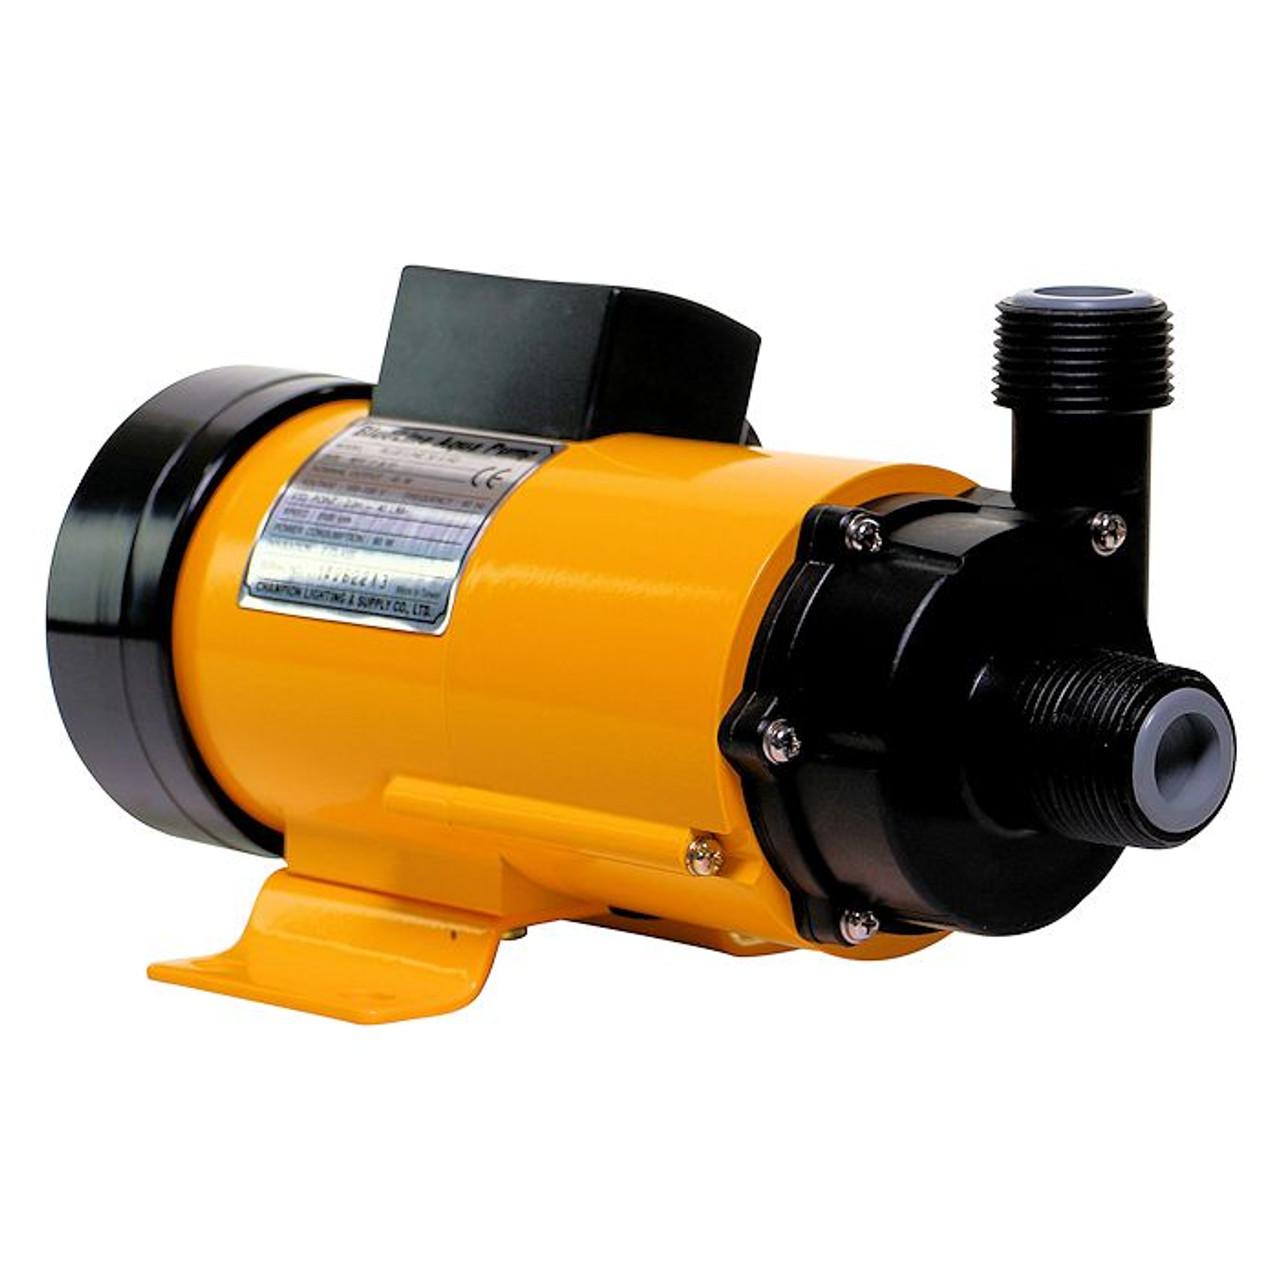 Blueline 30 HD-X Water Pump - 1110 gph